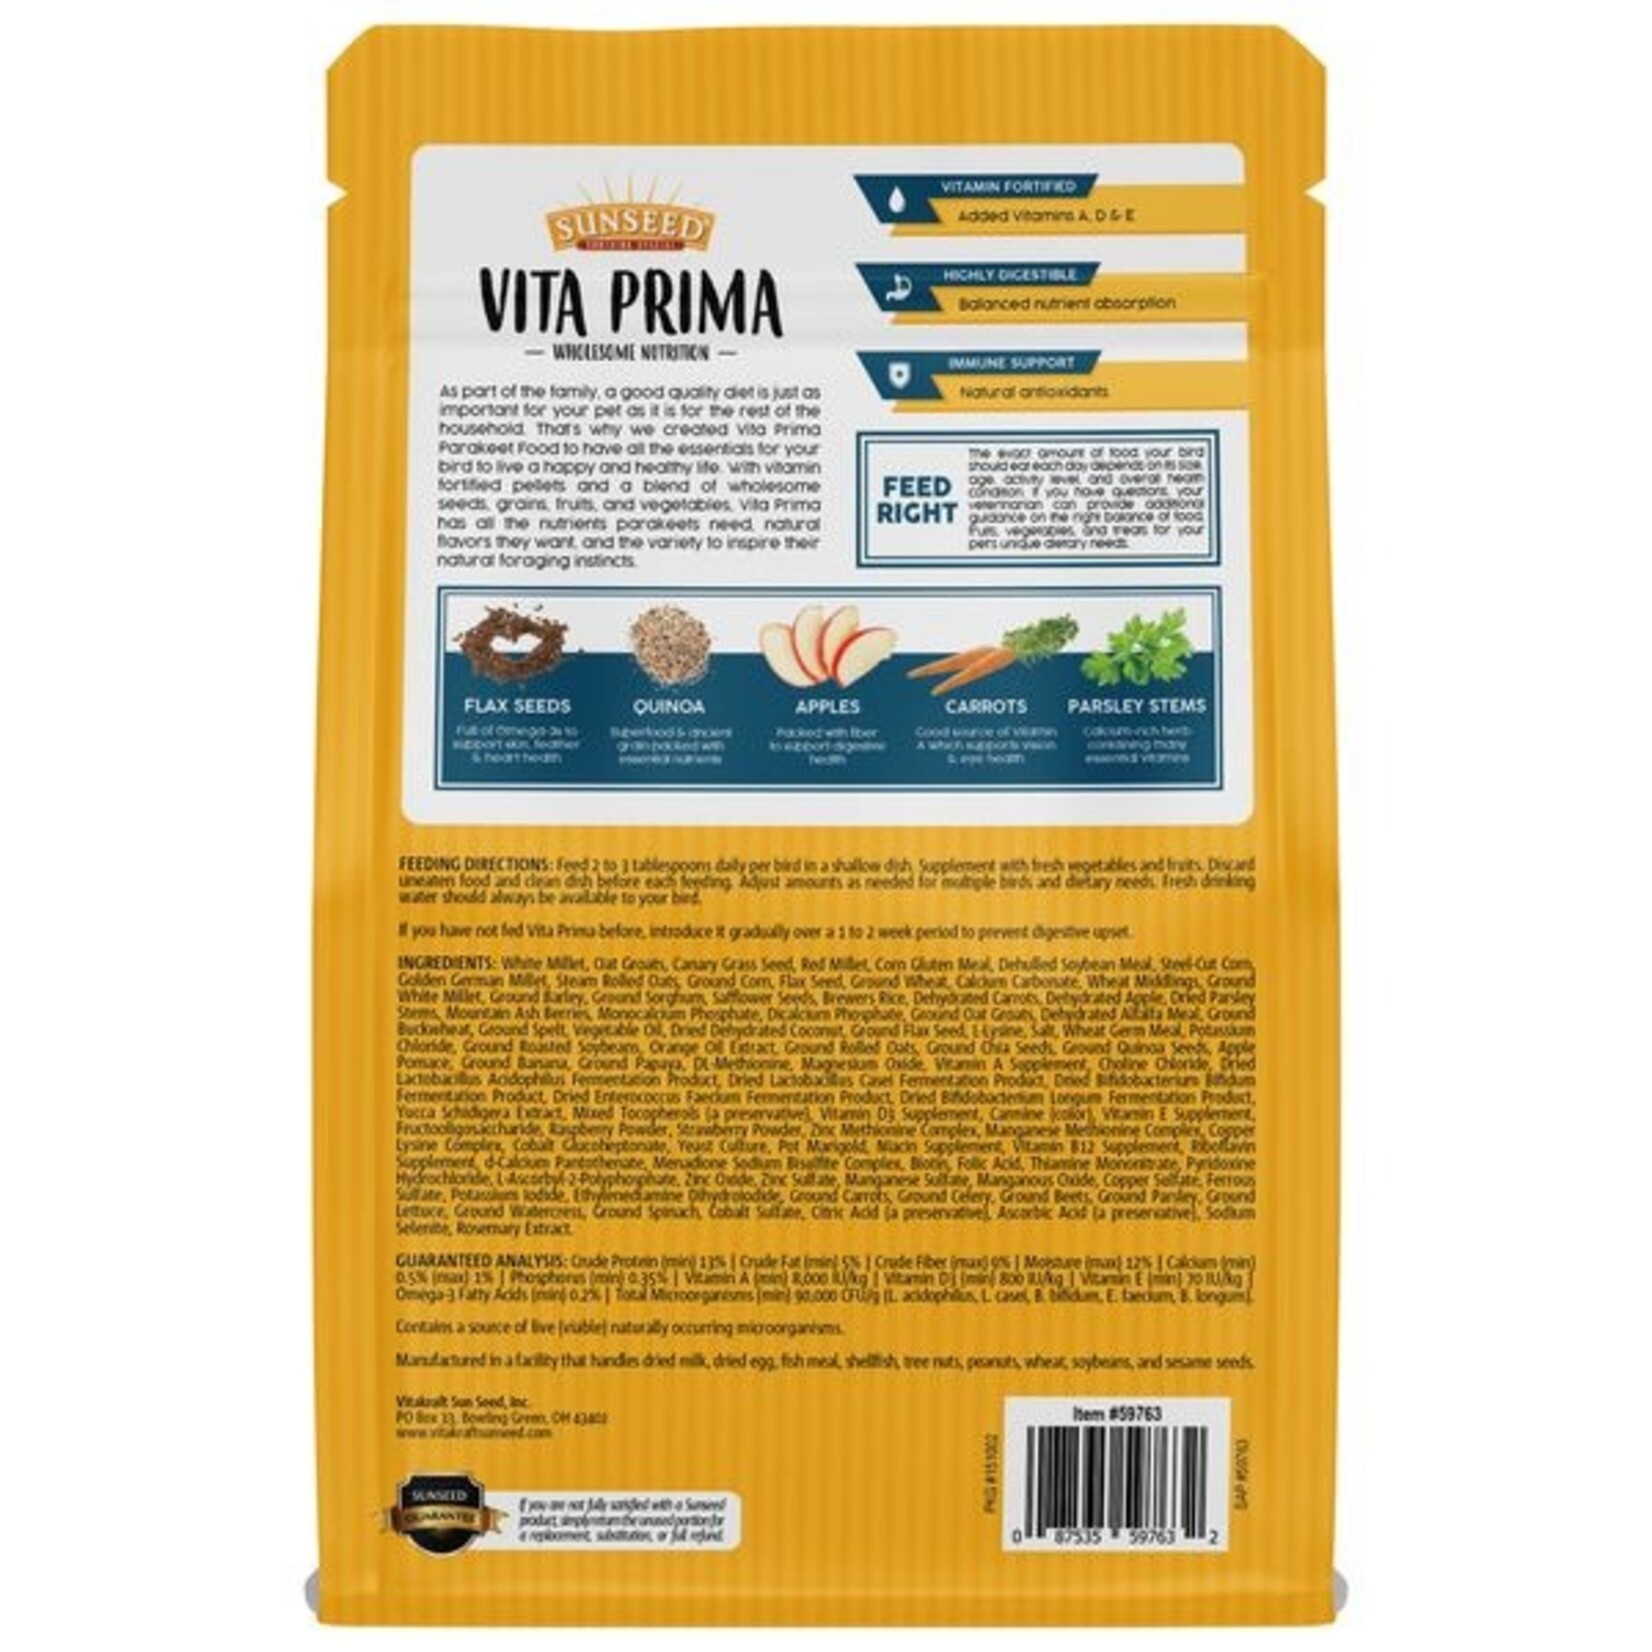 Sunseed Vita Prima Parakeet Food, 2lb